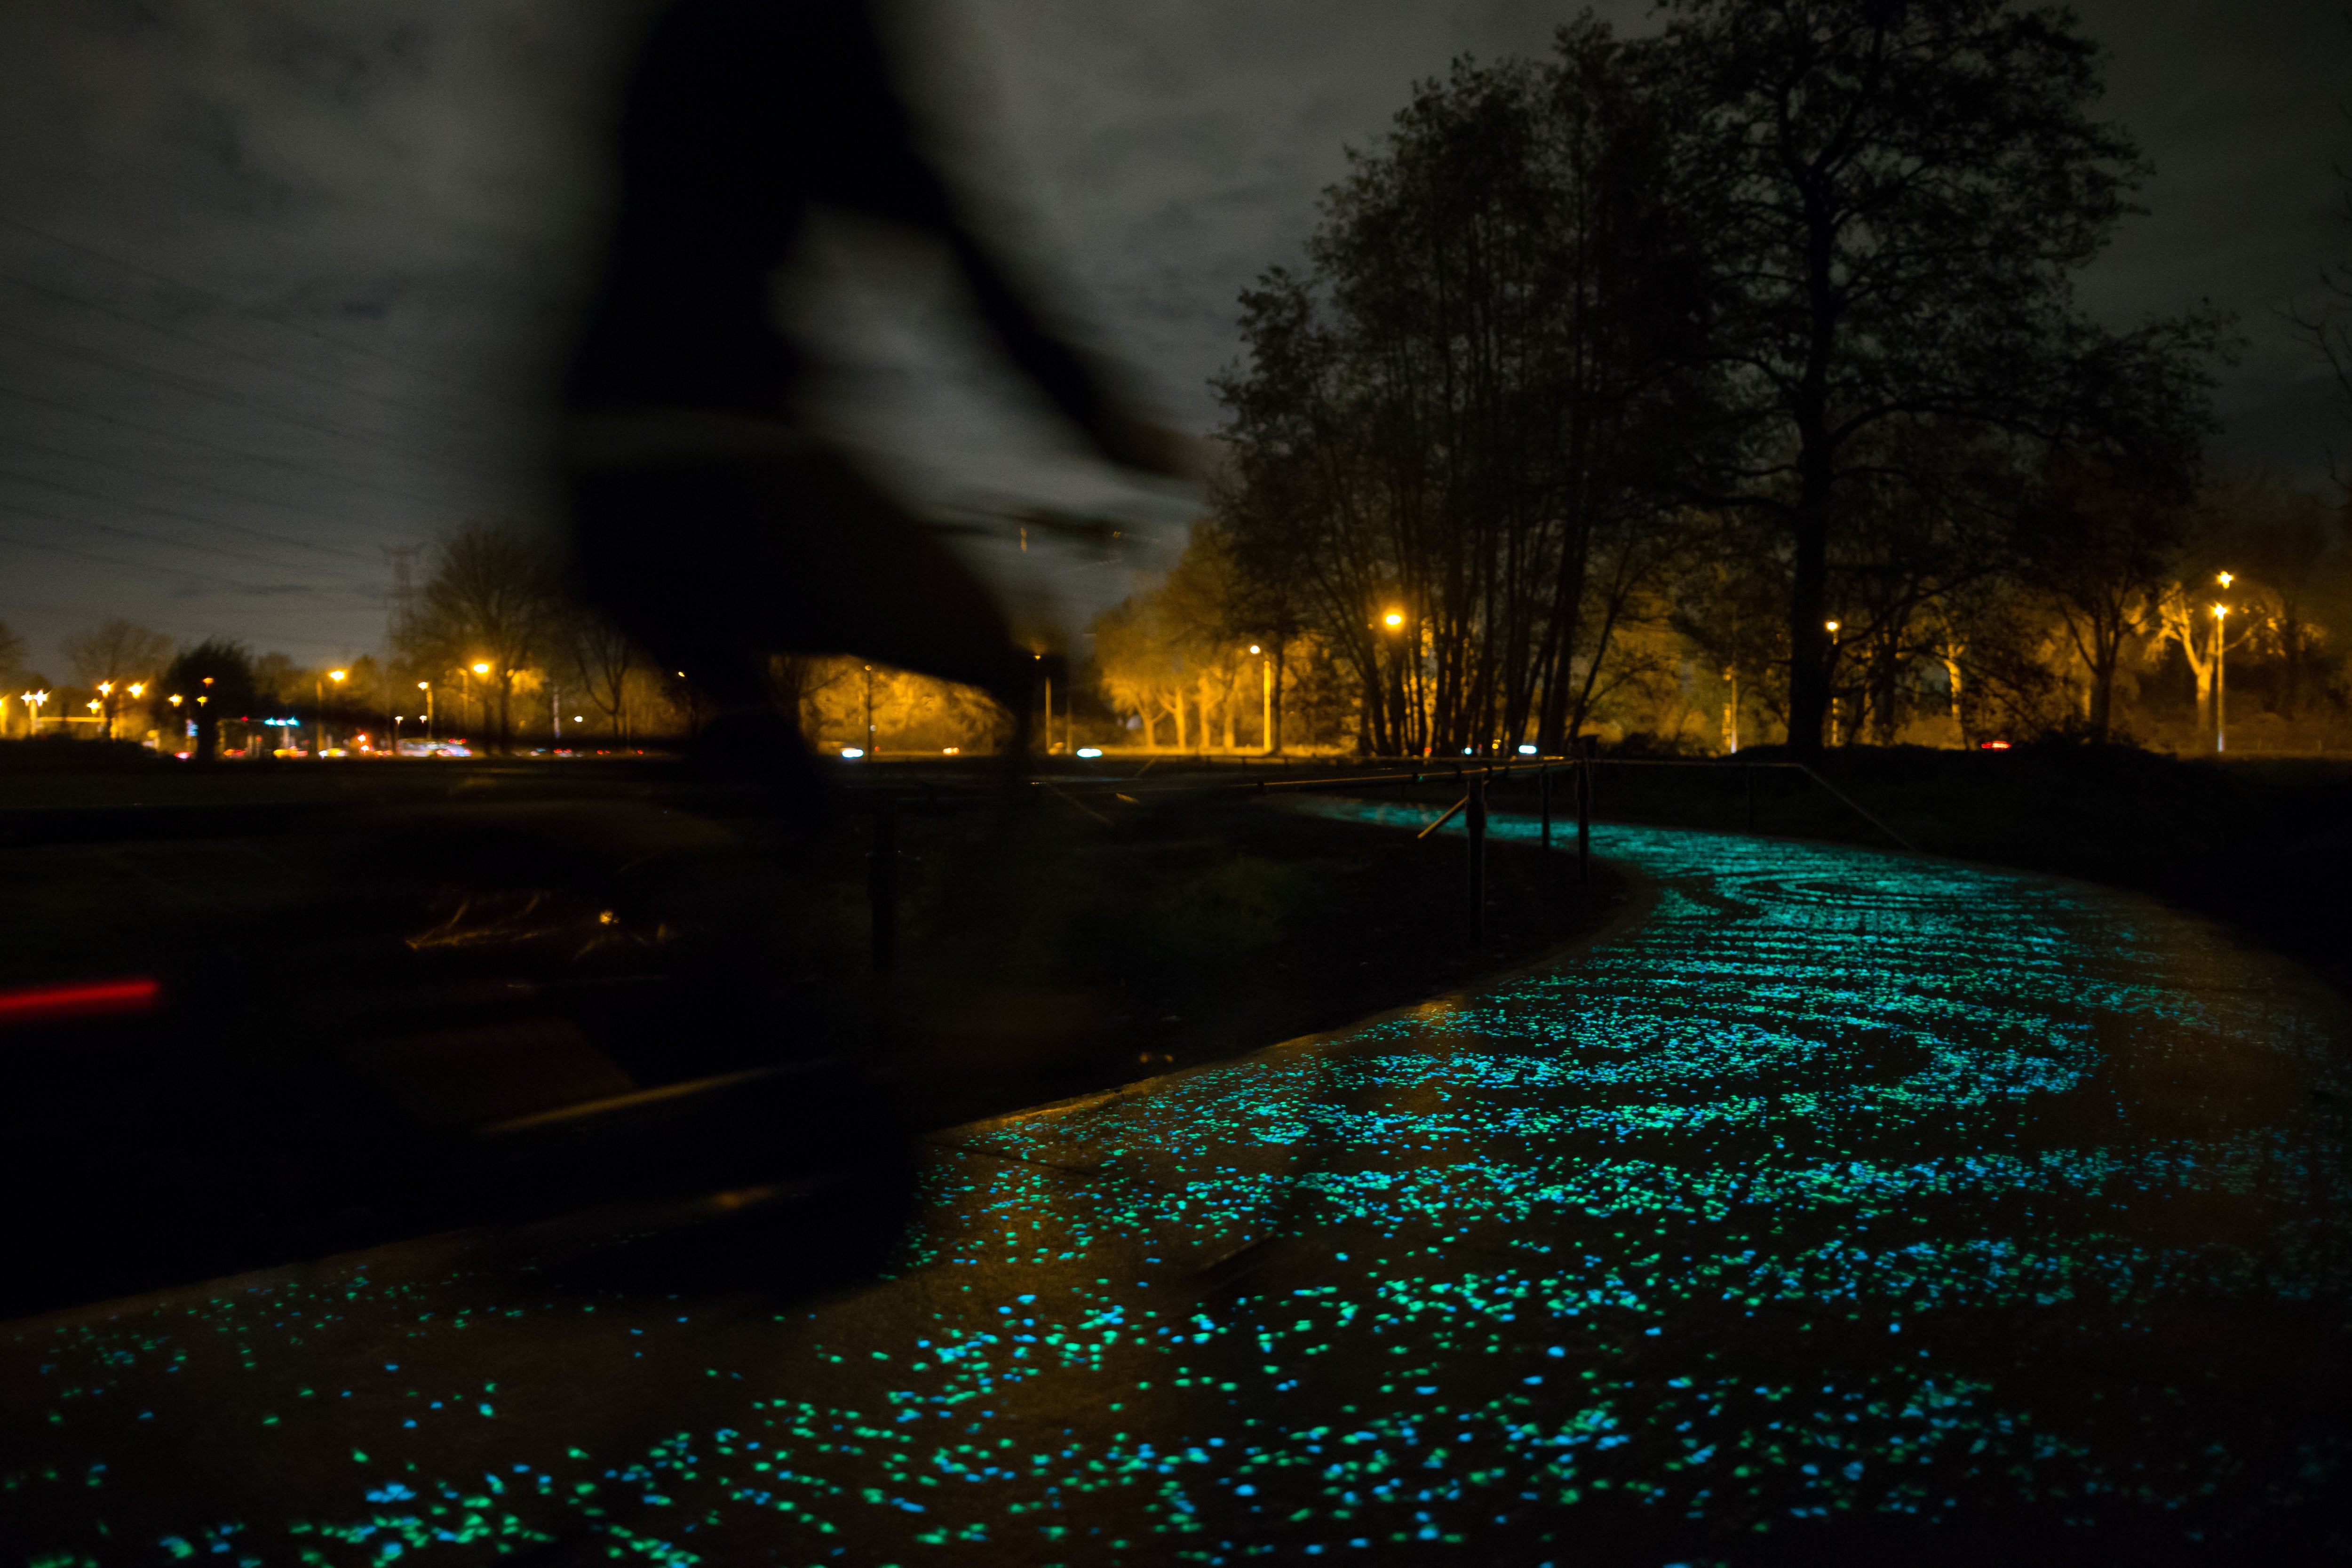 The twinkling Van Gogh-Roosegaarde cycle path